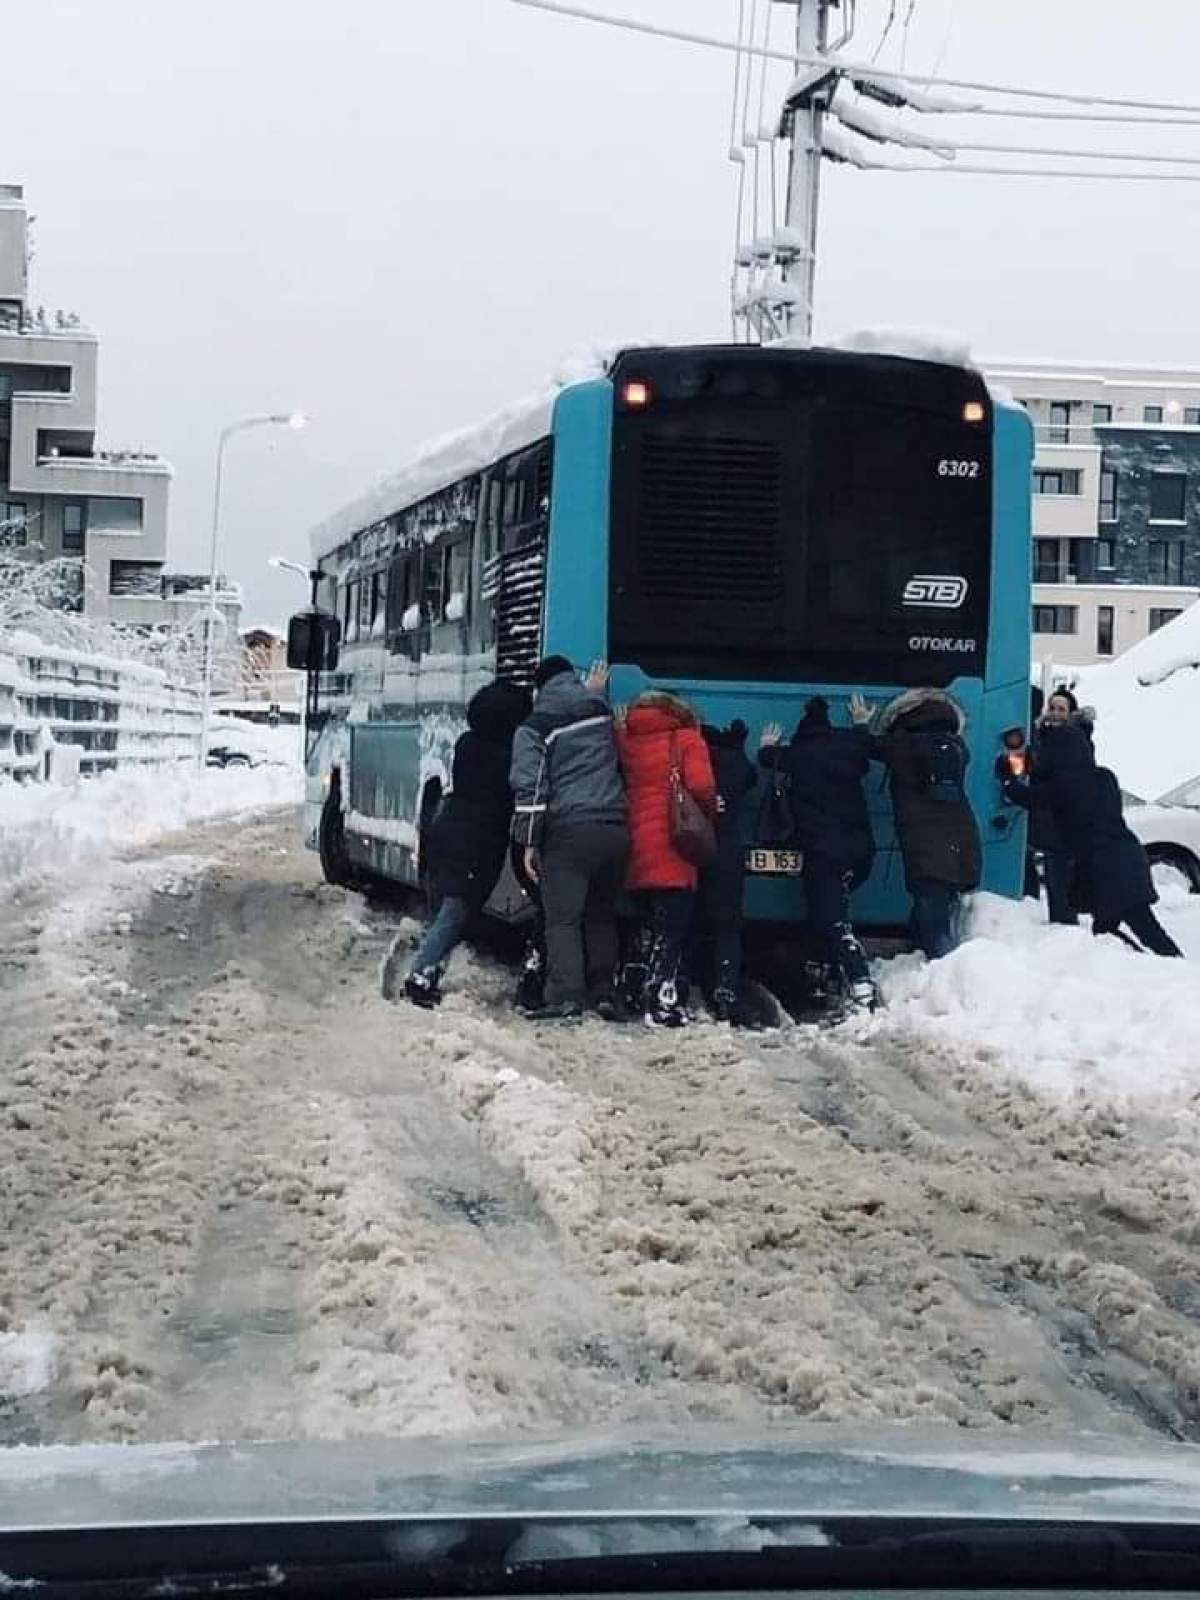 Imaginea zilei! Mai mulți călători împing un autobuz STB, ca să îl scoată din zăpadă